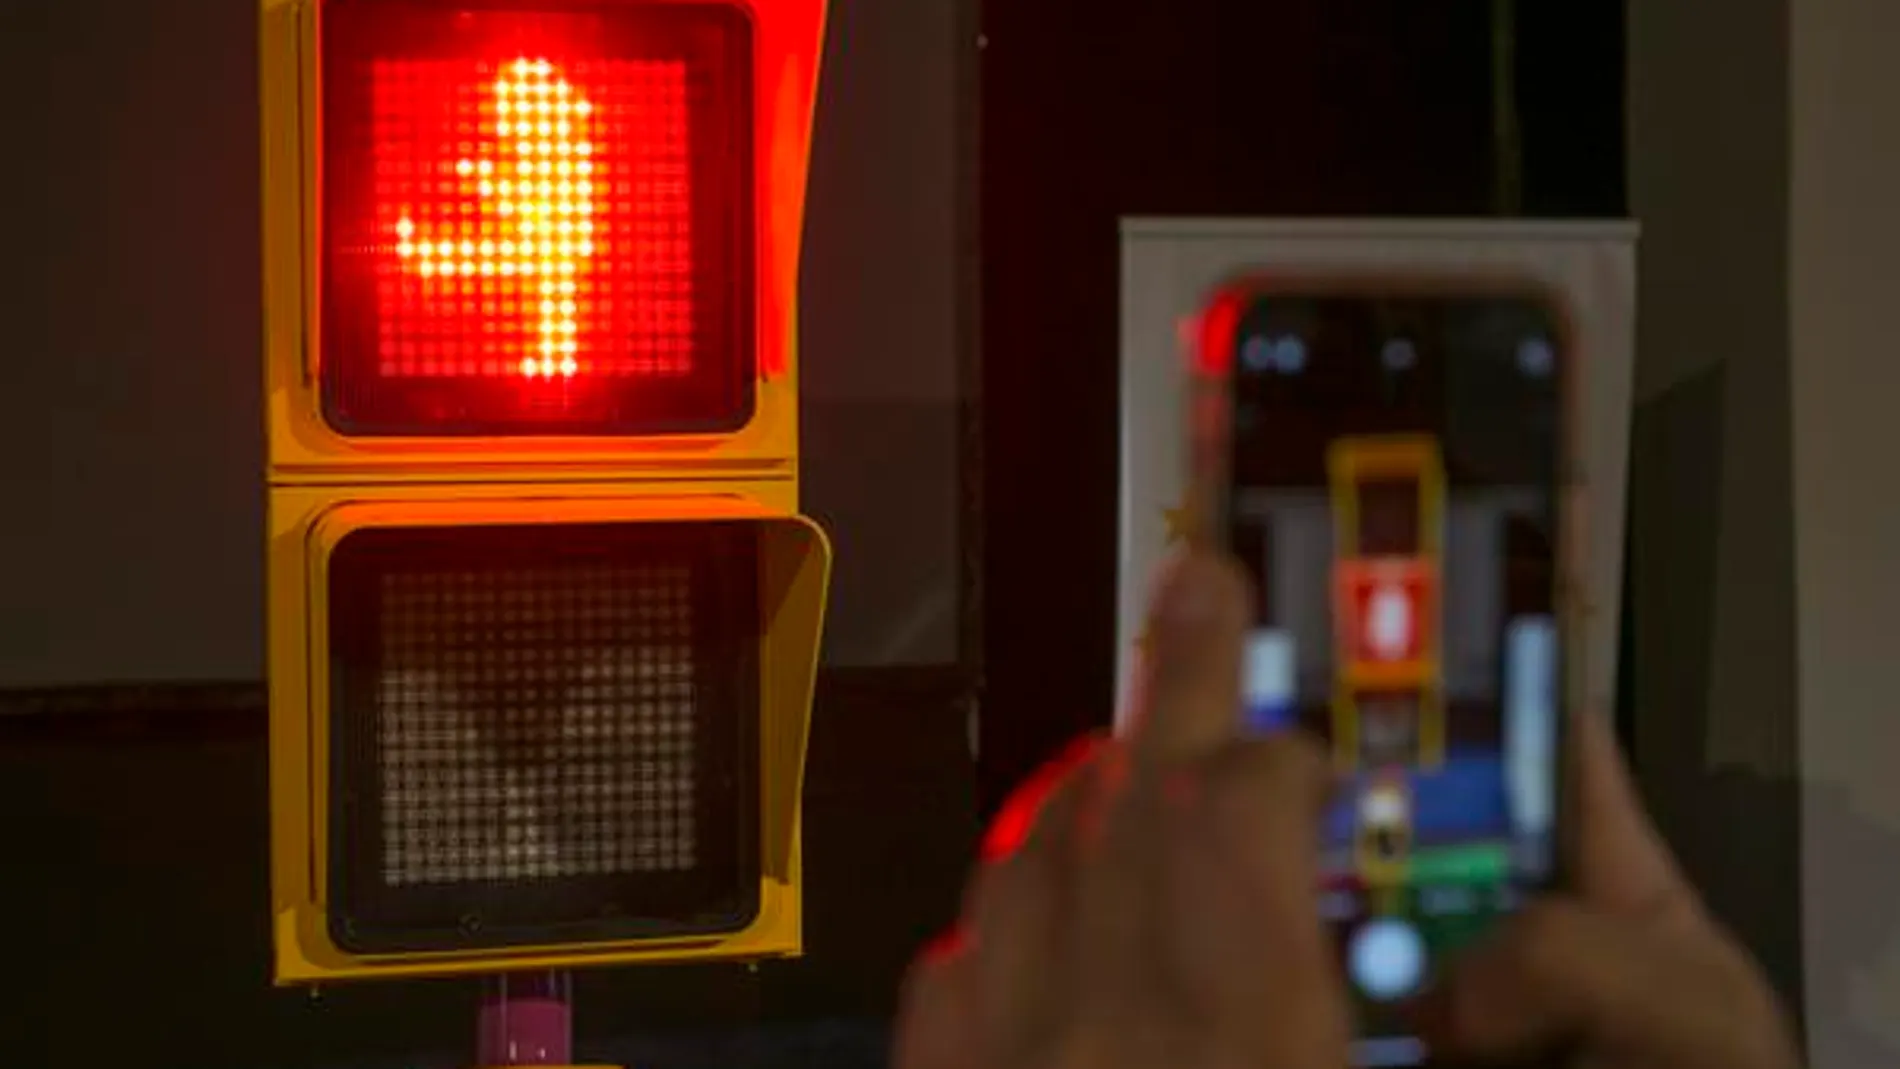 Málaga inaugura el semáforo de Chiquito de la Calzada con una original forma de avisar a los peatones